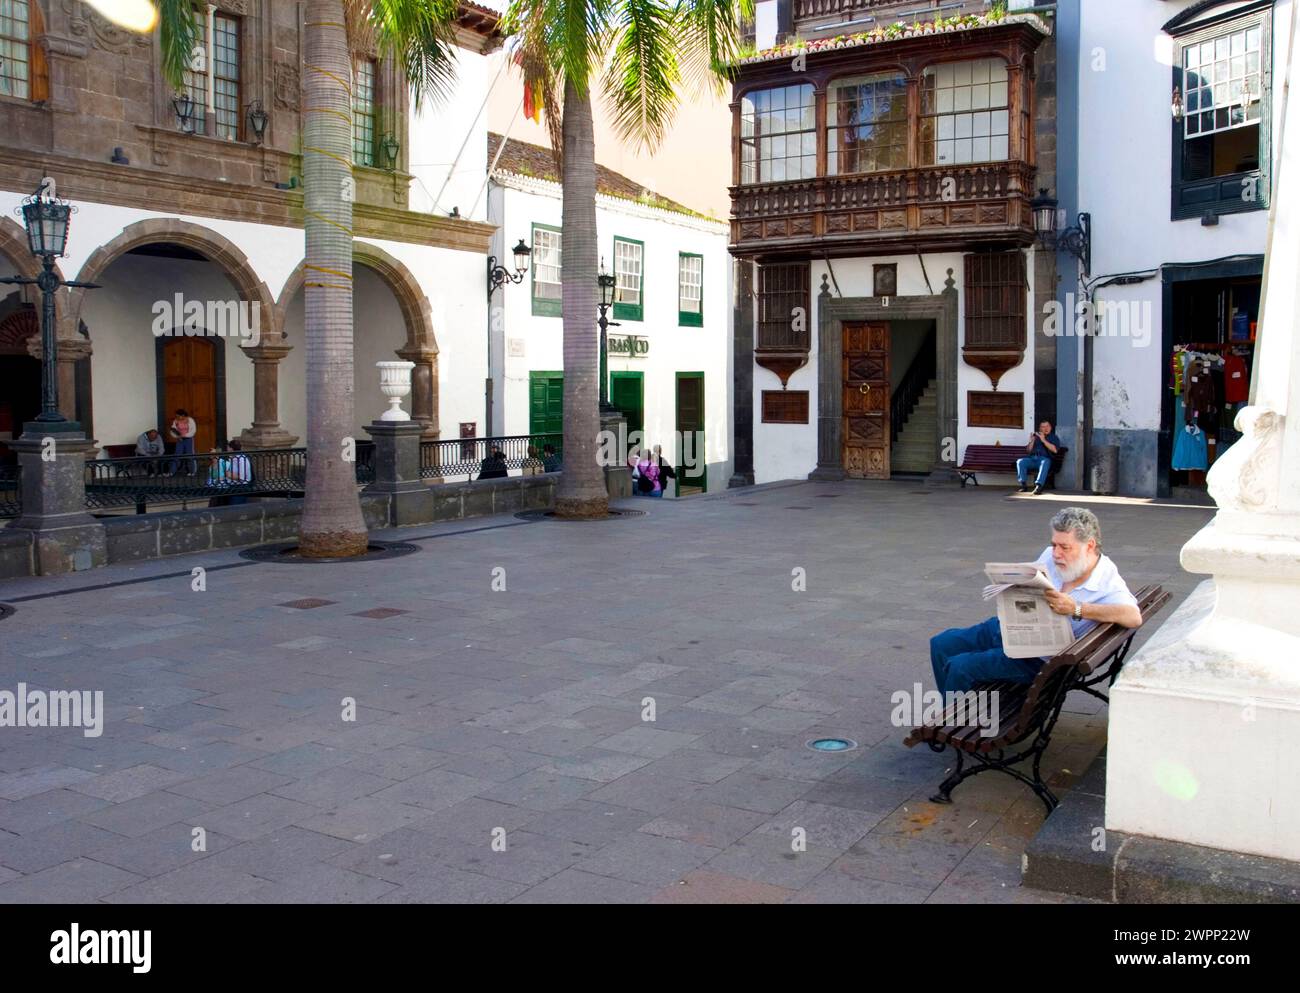 Homme lisant le journal, Plaza de Espana, Santa Cruz de la Palma, la Palma, Kanarische Inseln, Espagne Banque D'Images